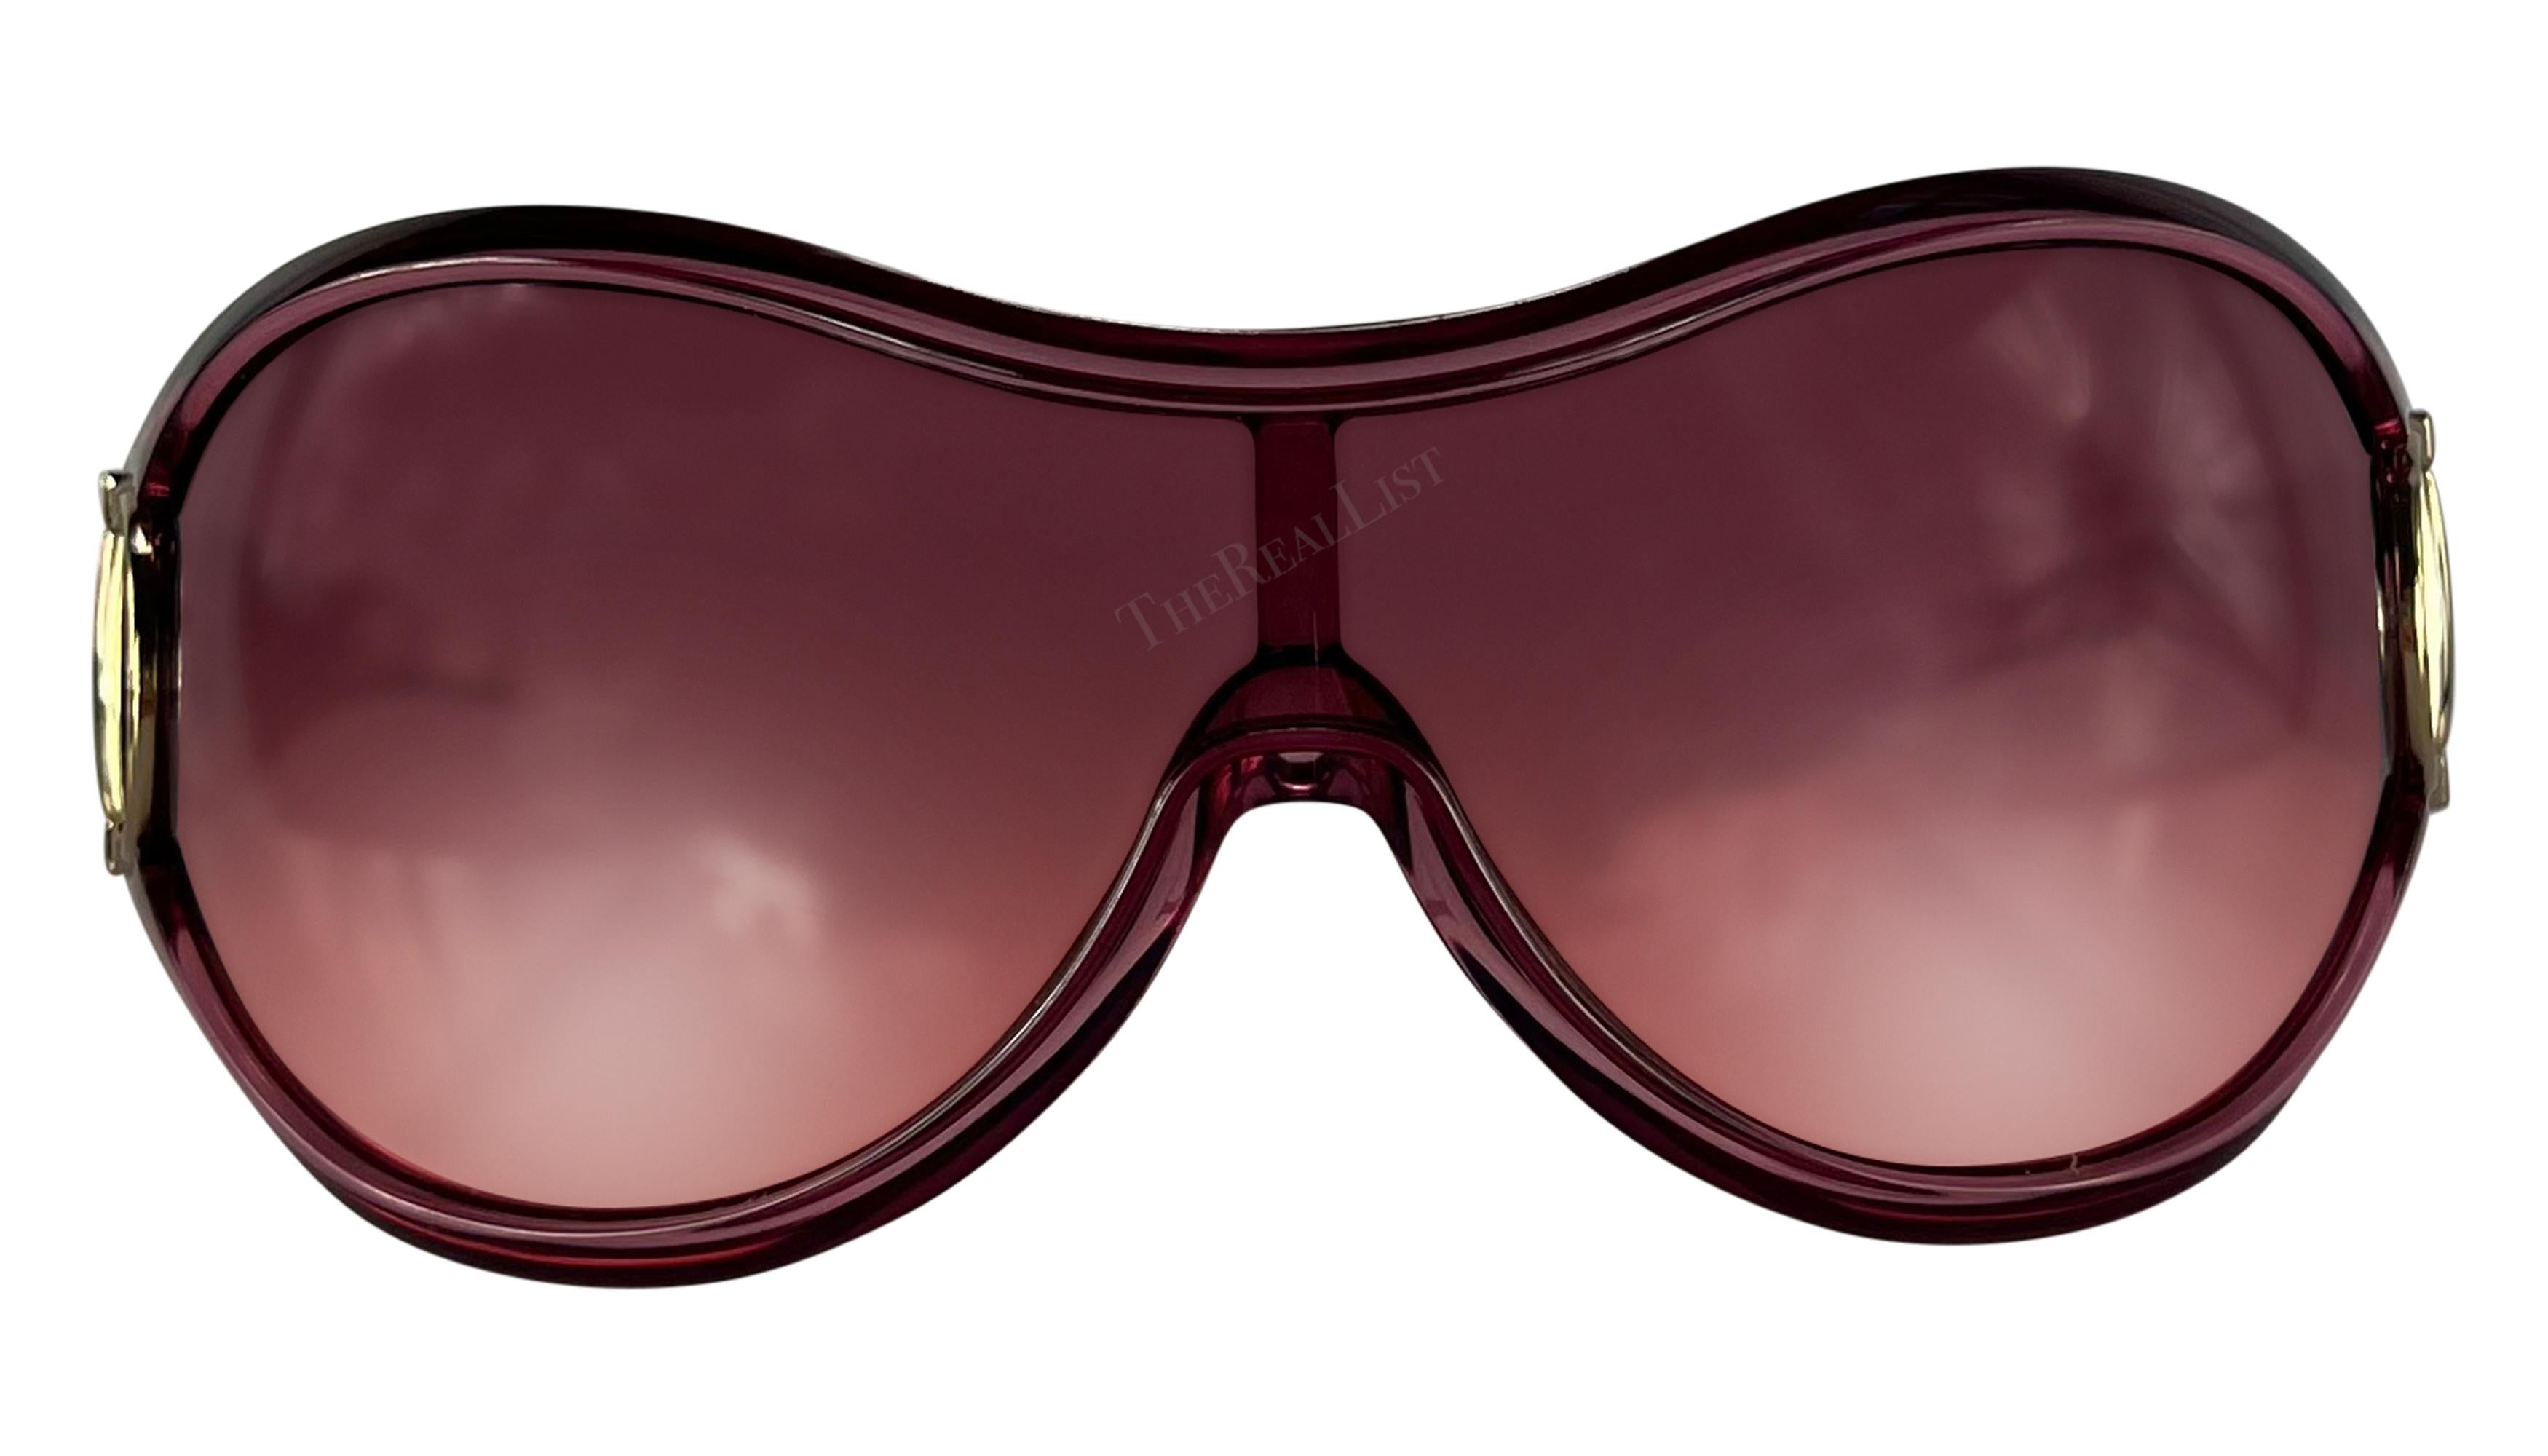 Ich präsentiere eine fabelhafte hellrosa Gucci Sonnenbrille mit Schild. Diese übergroße Shield-Sonnenbrille aus der Mitte der 2000er Jahre hat einen transparenten, hellrosa Rahmen, rosafarbene Gläser und ist mit silberfarbenen Pferdegebiss-Akzenten